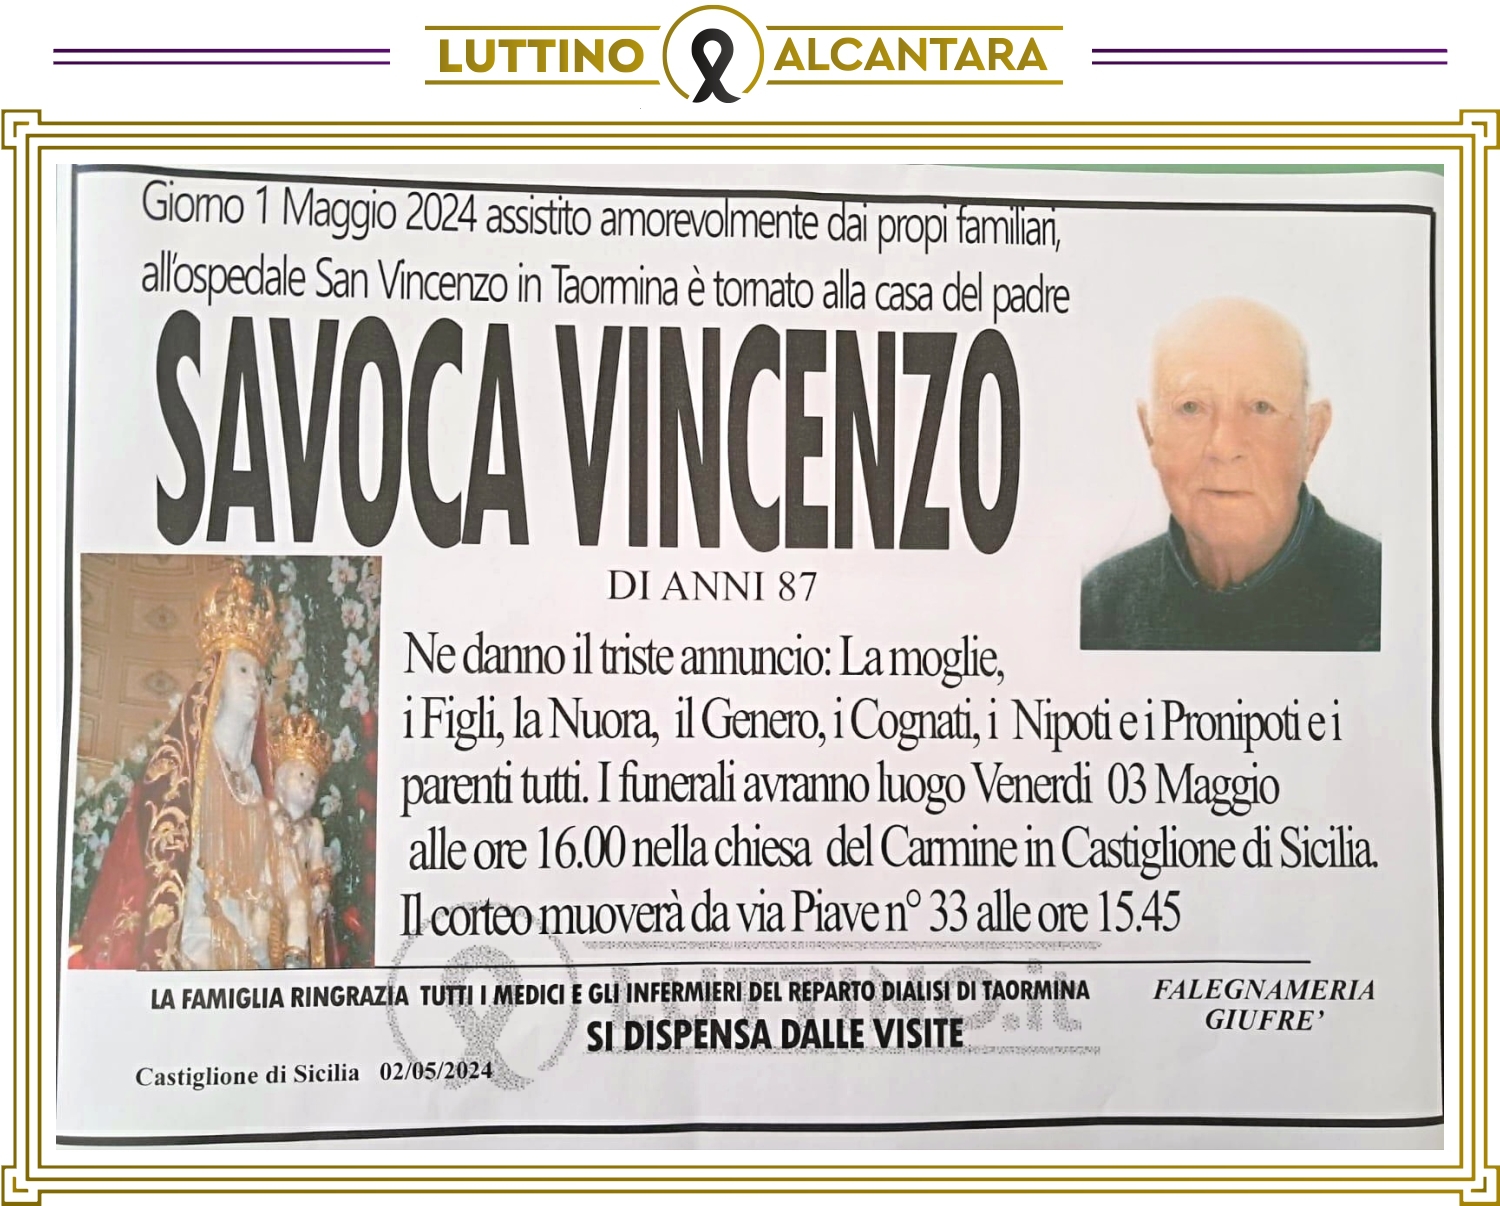 Vincenzo Savoca